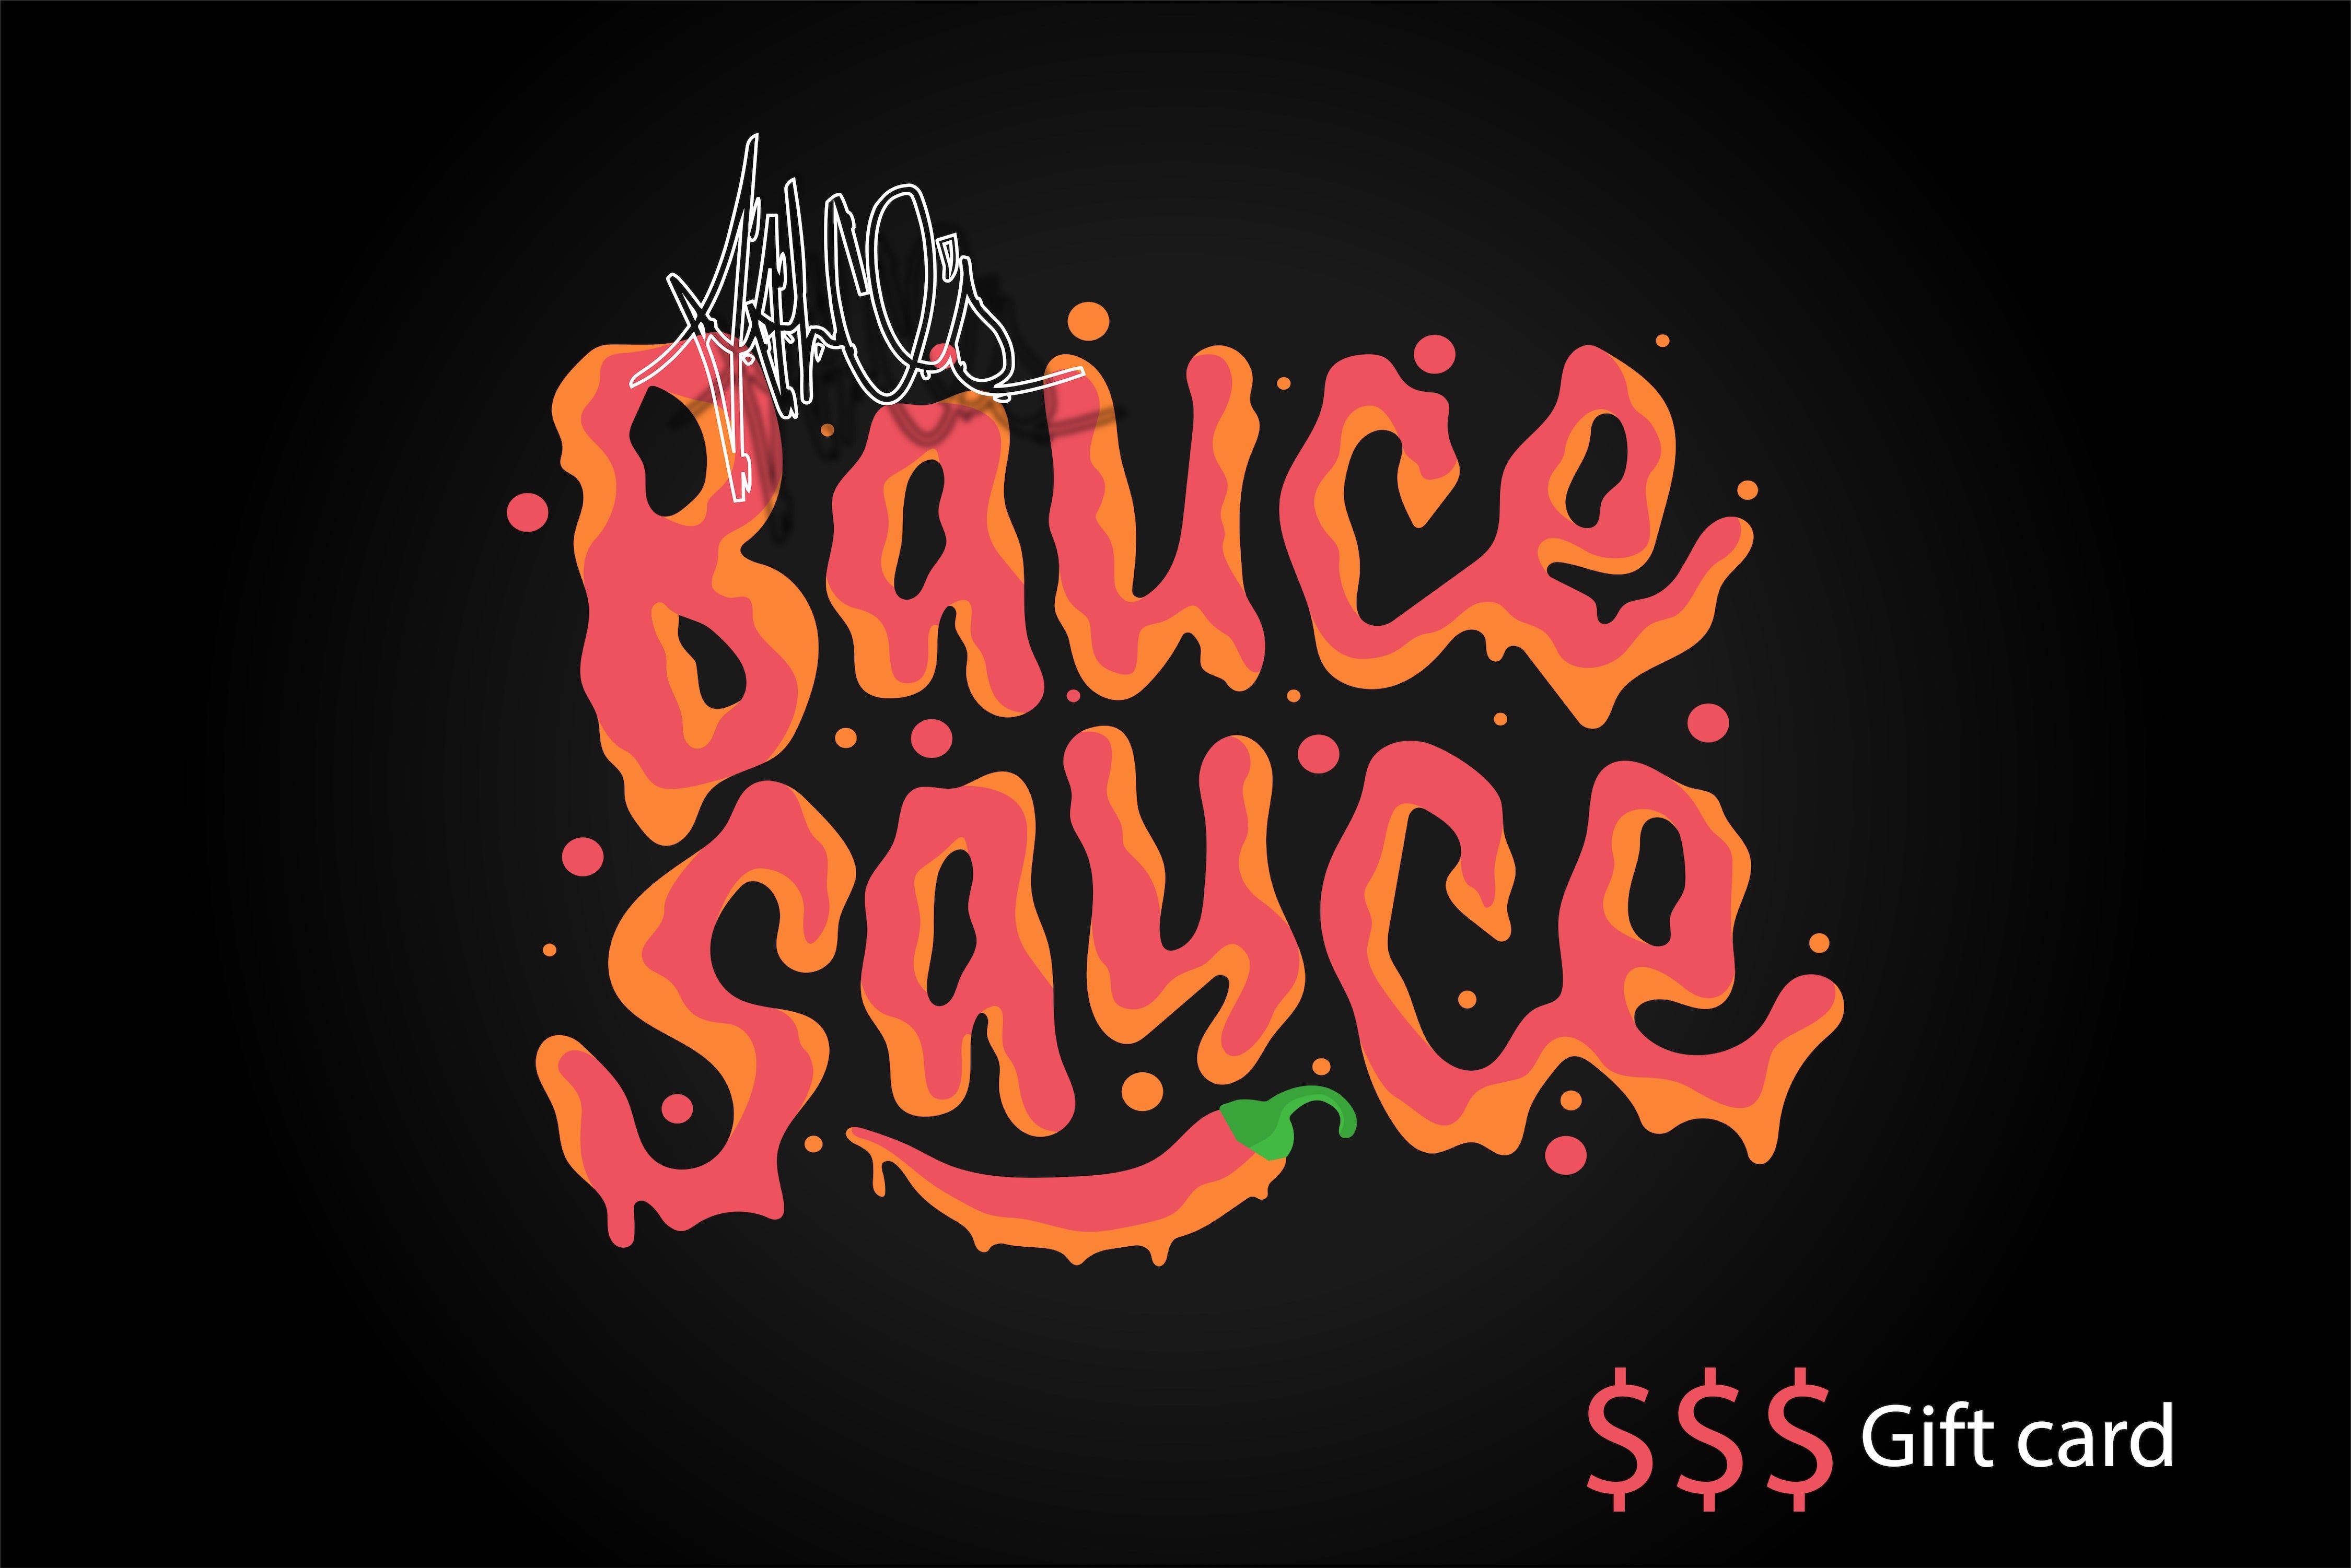 Falco' Bauce Sauce gift card